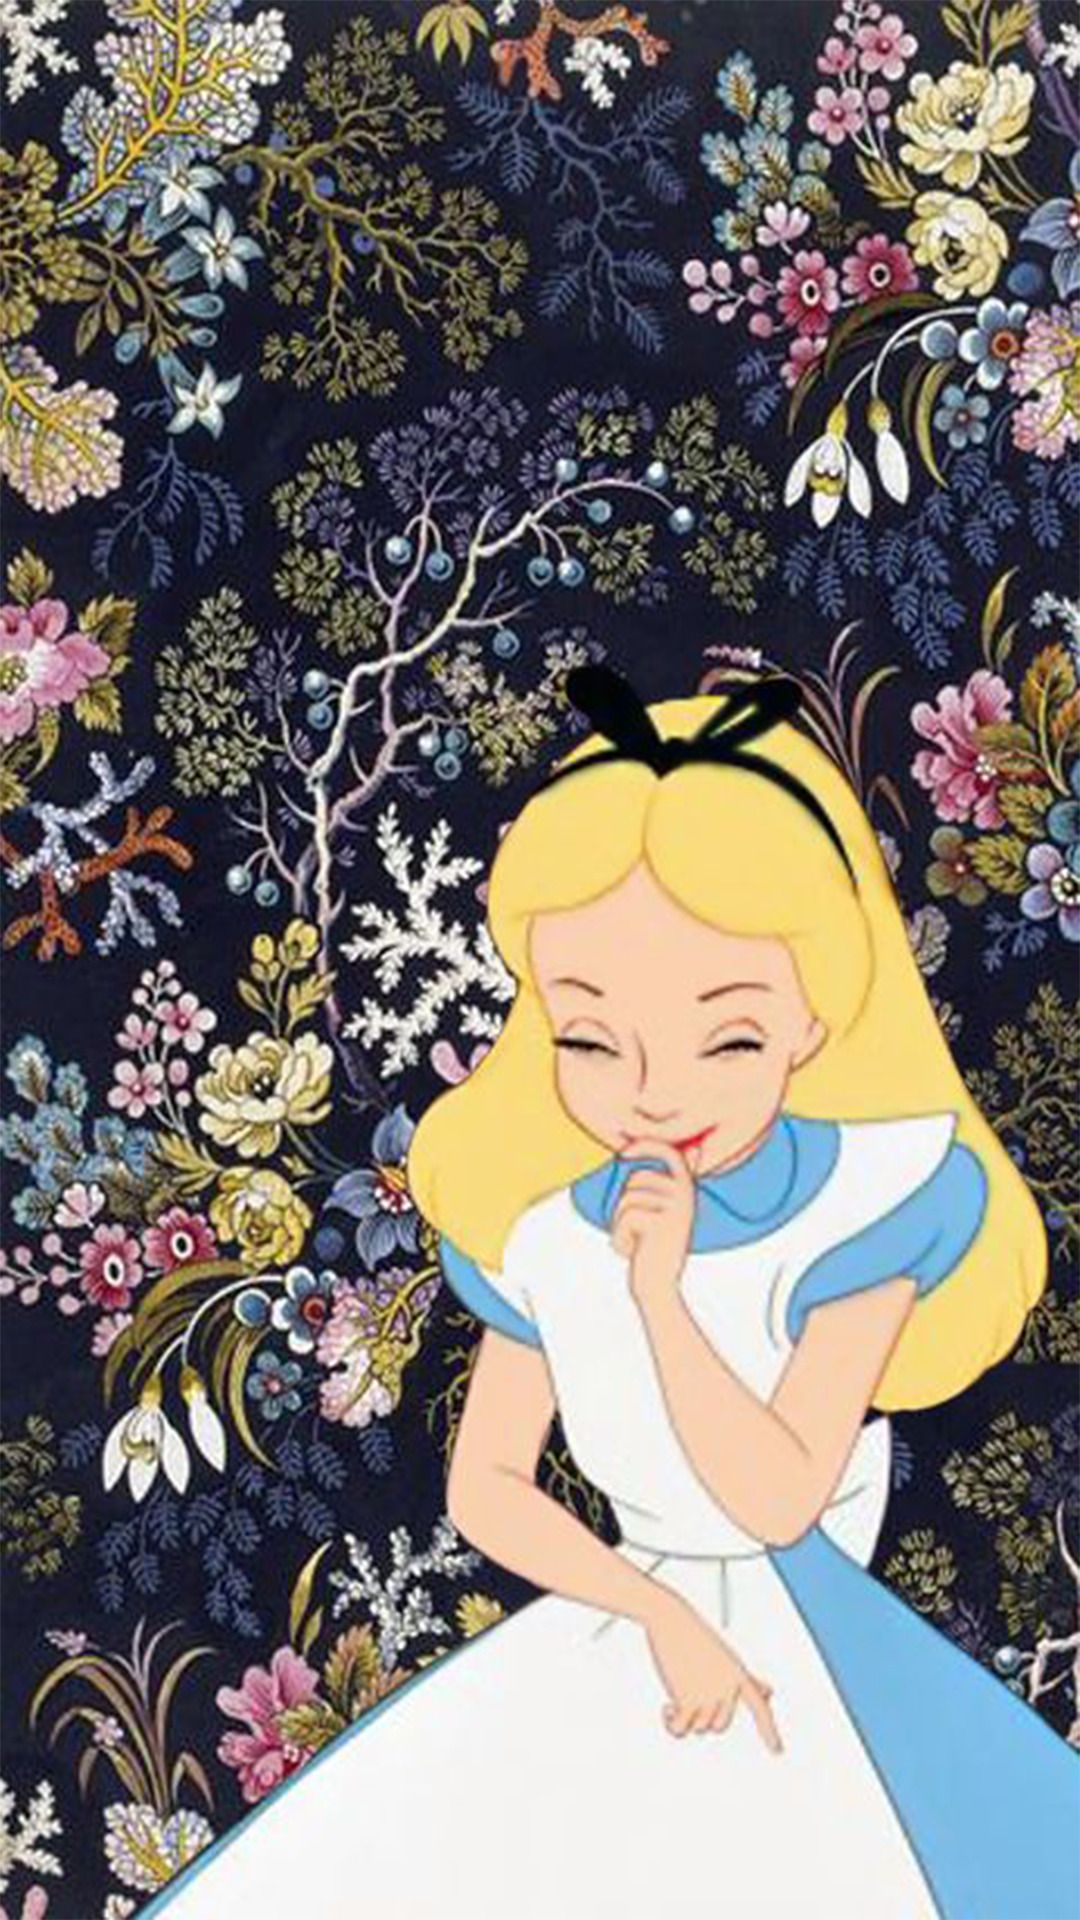 1080x1920 Alice in Wonderland iPhone Wallpaper - Top Free Alice.